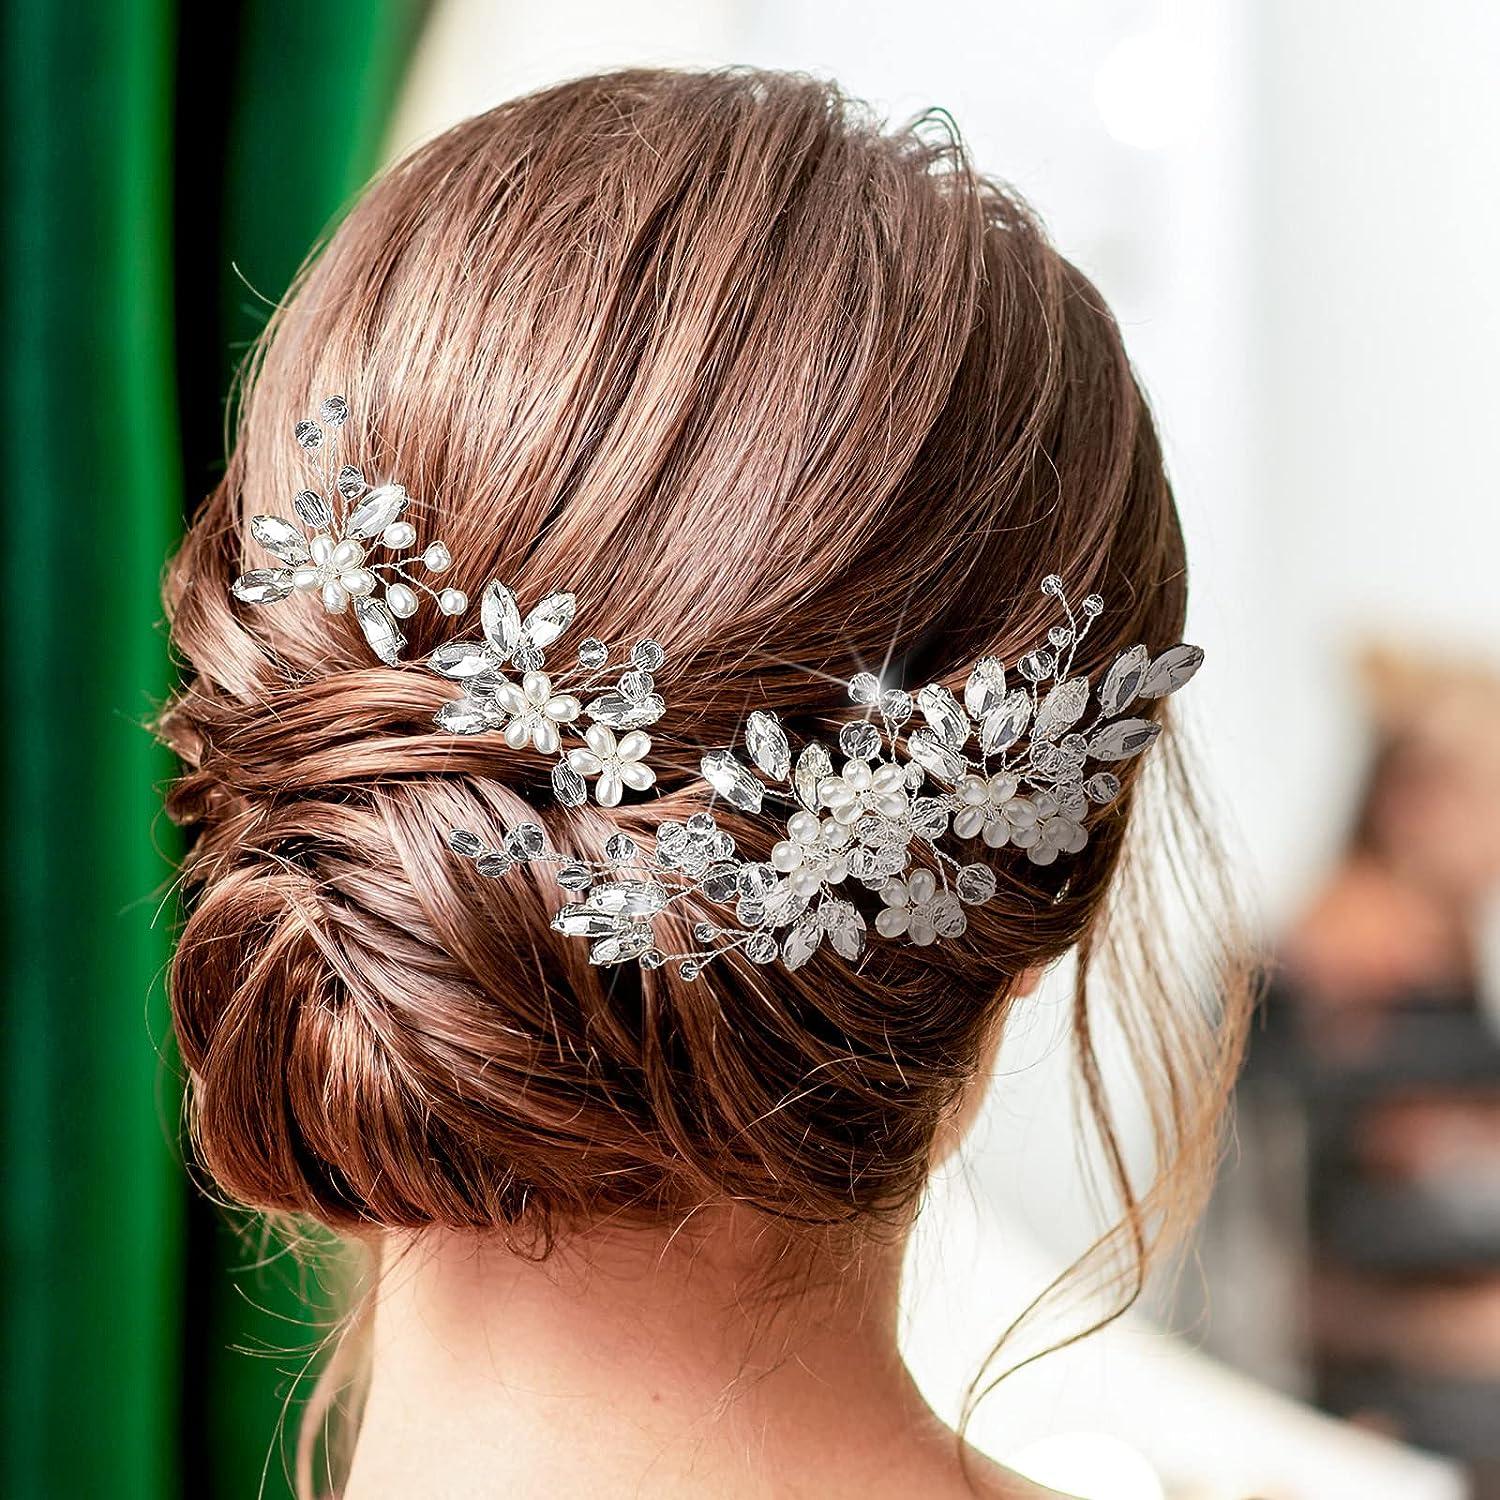 Pearl Hair Pins for Wedding Hair Accessories, Wedding Hair Piece